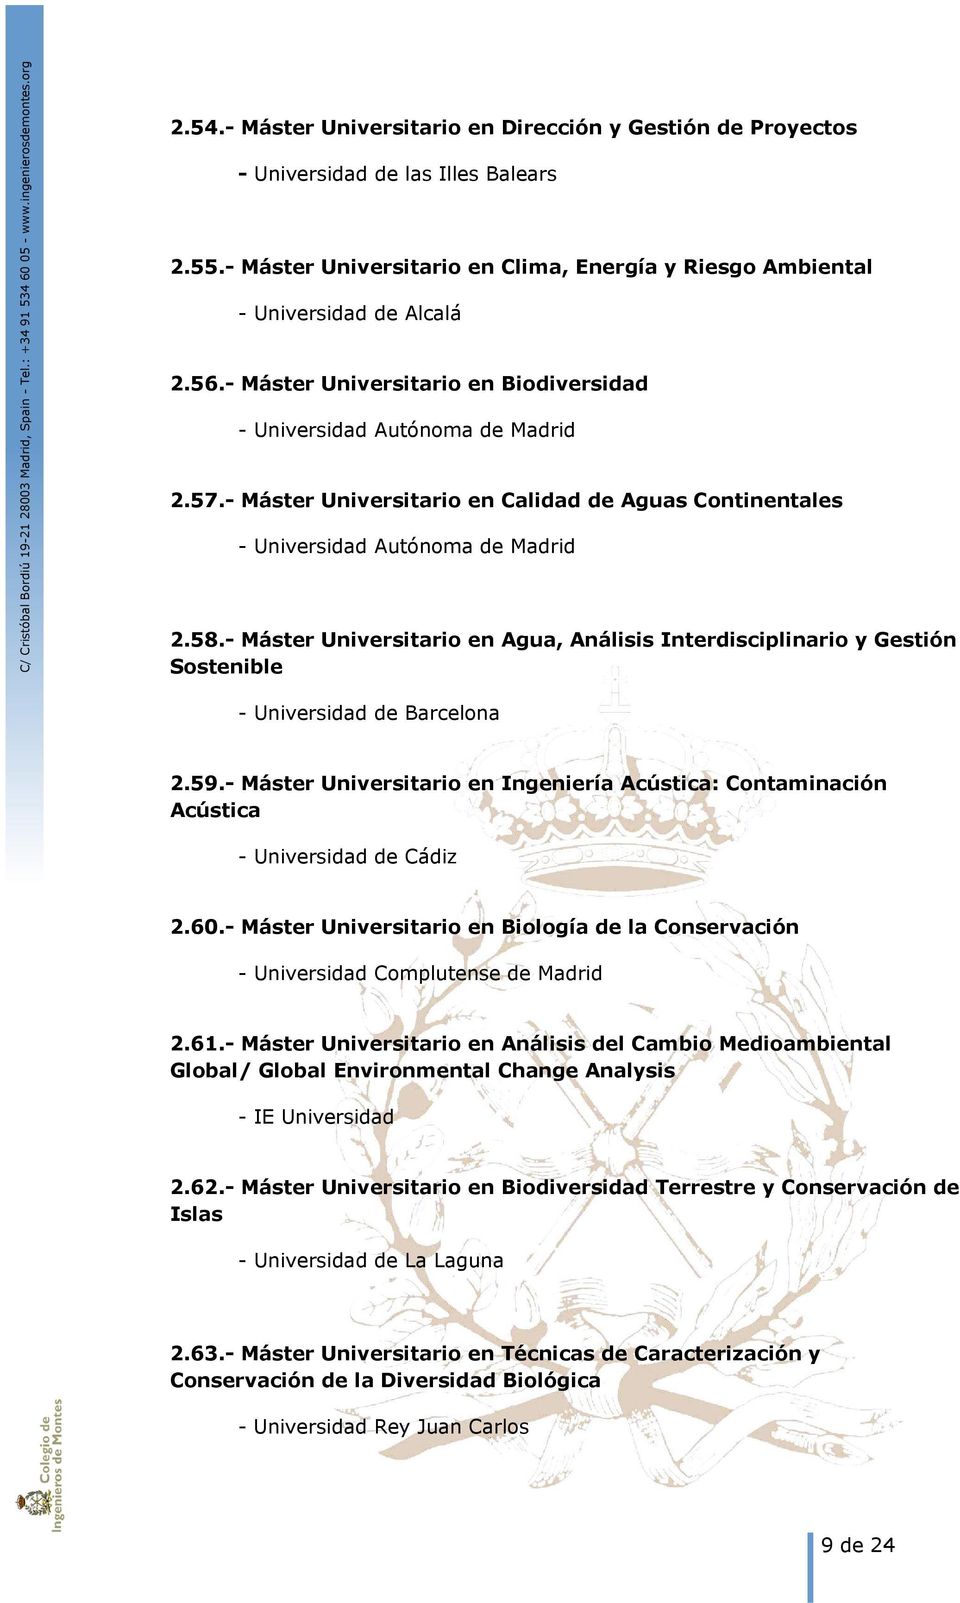 - Máster Universitario en Agua, Análisis Interdisciplinario y Gestión Sostenible - Universidad de Barcelona 2.59.